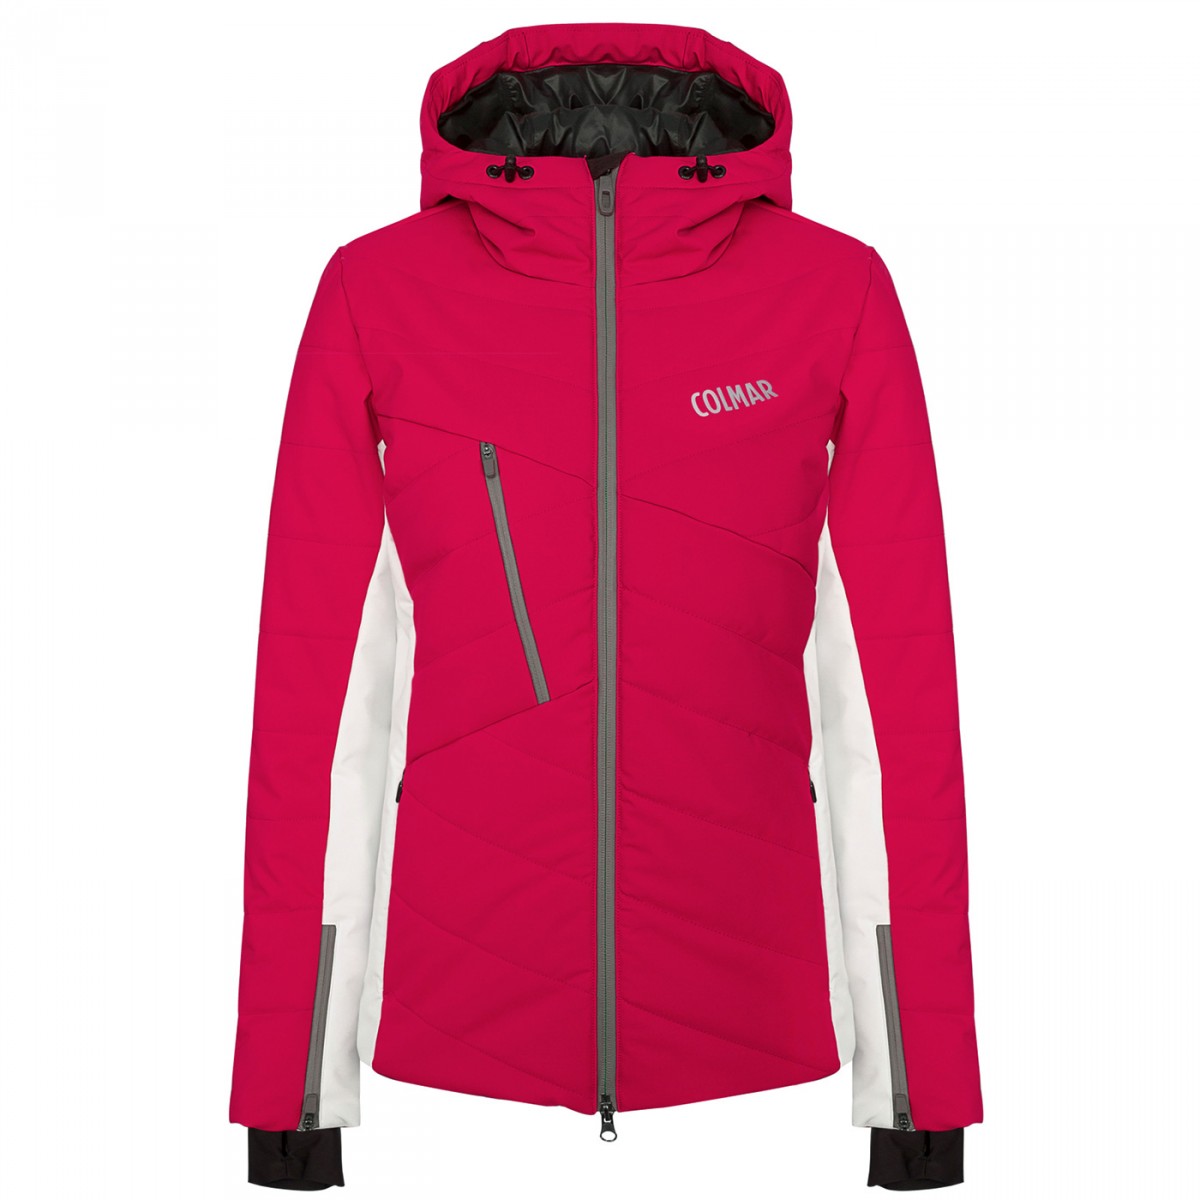 Ski jacket Colmar Lake Louise Woman red-grey | EN